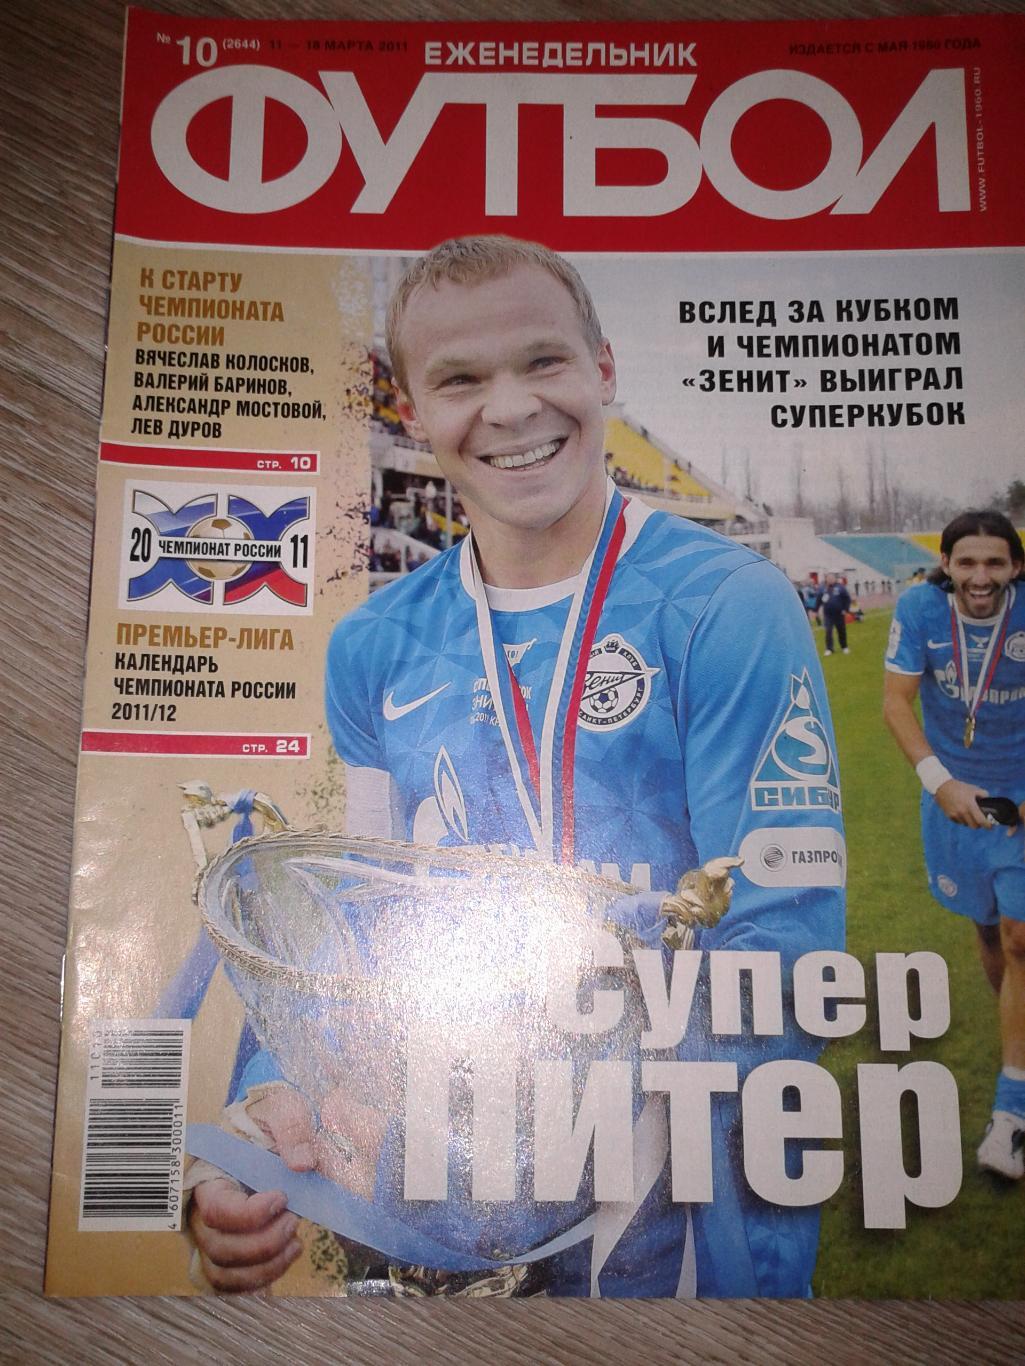 2011 Еженедельник Футбол №10